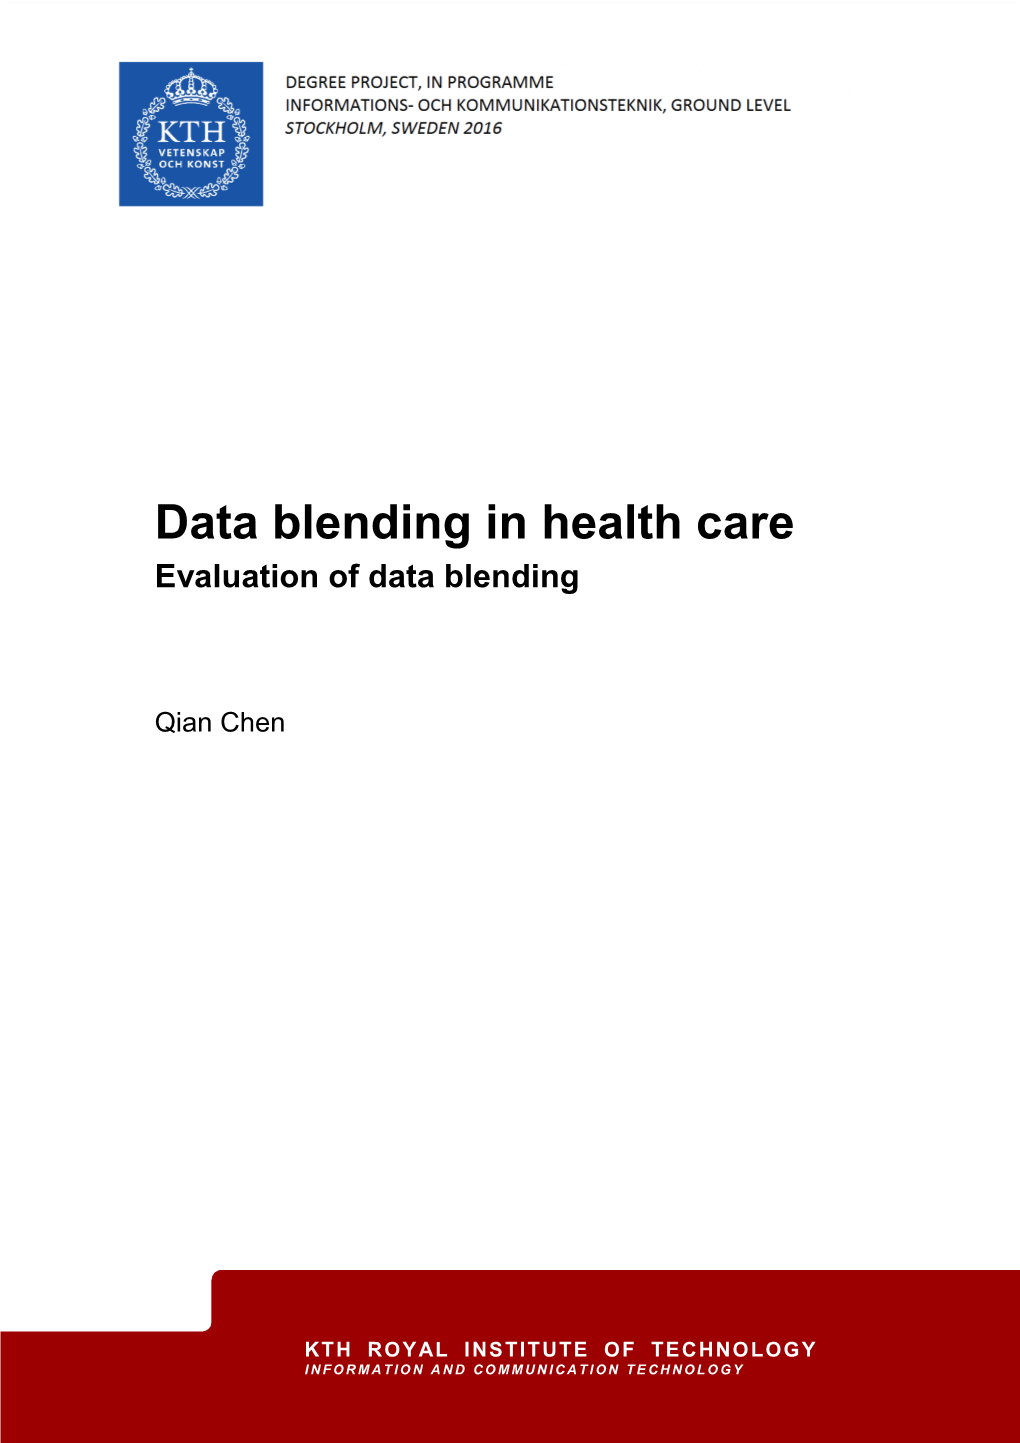 Data Blending in Health Care Evaluation of Data Blending